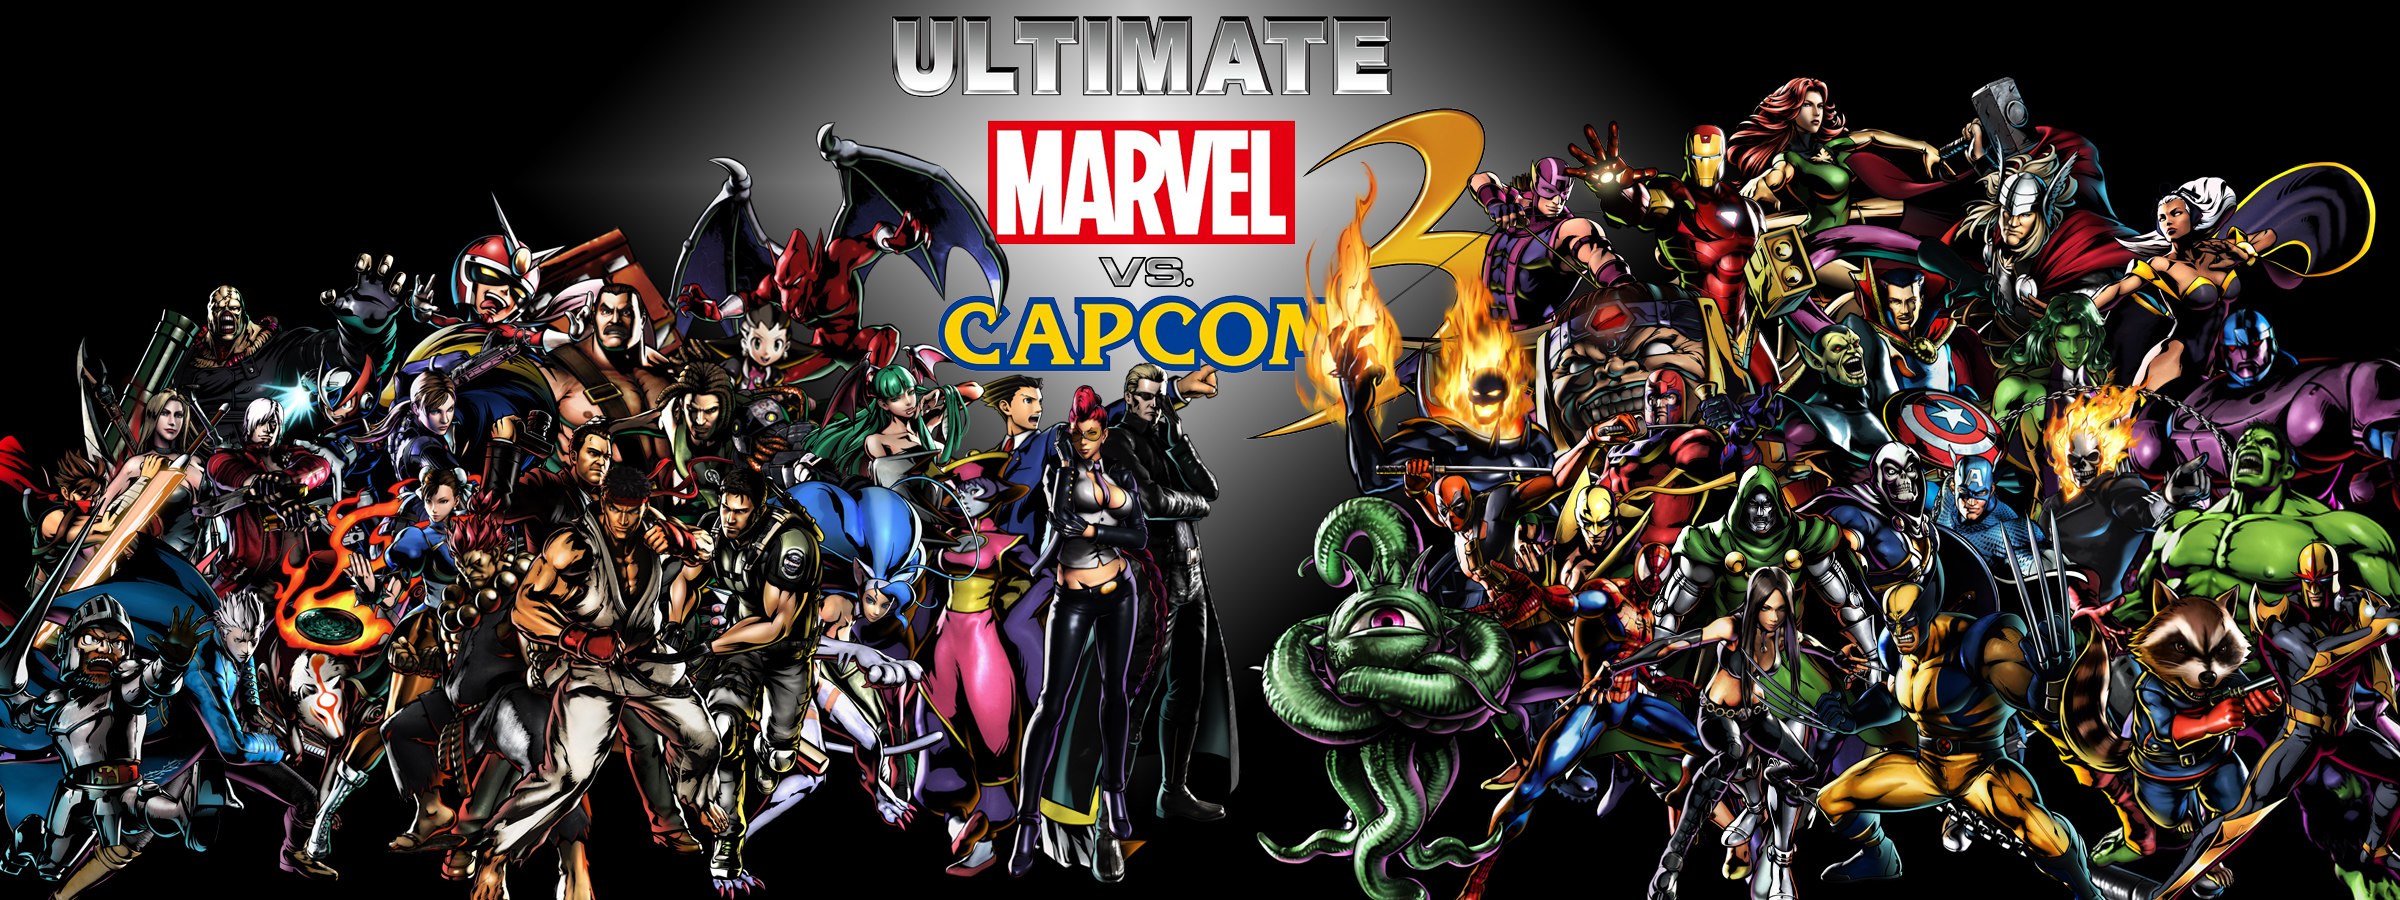 Marvel Vs. Capcom 3 HD wallpapers, Desktop wallpaper - most viewed